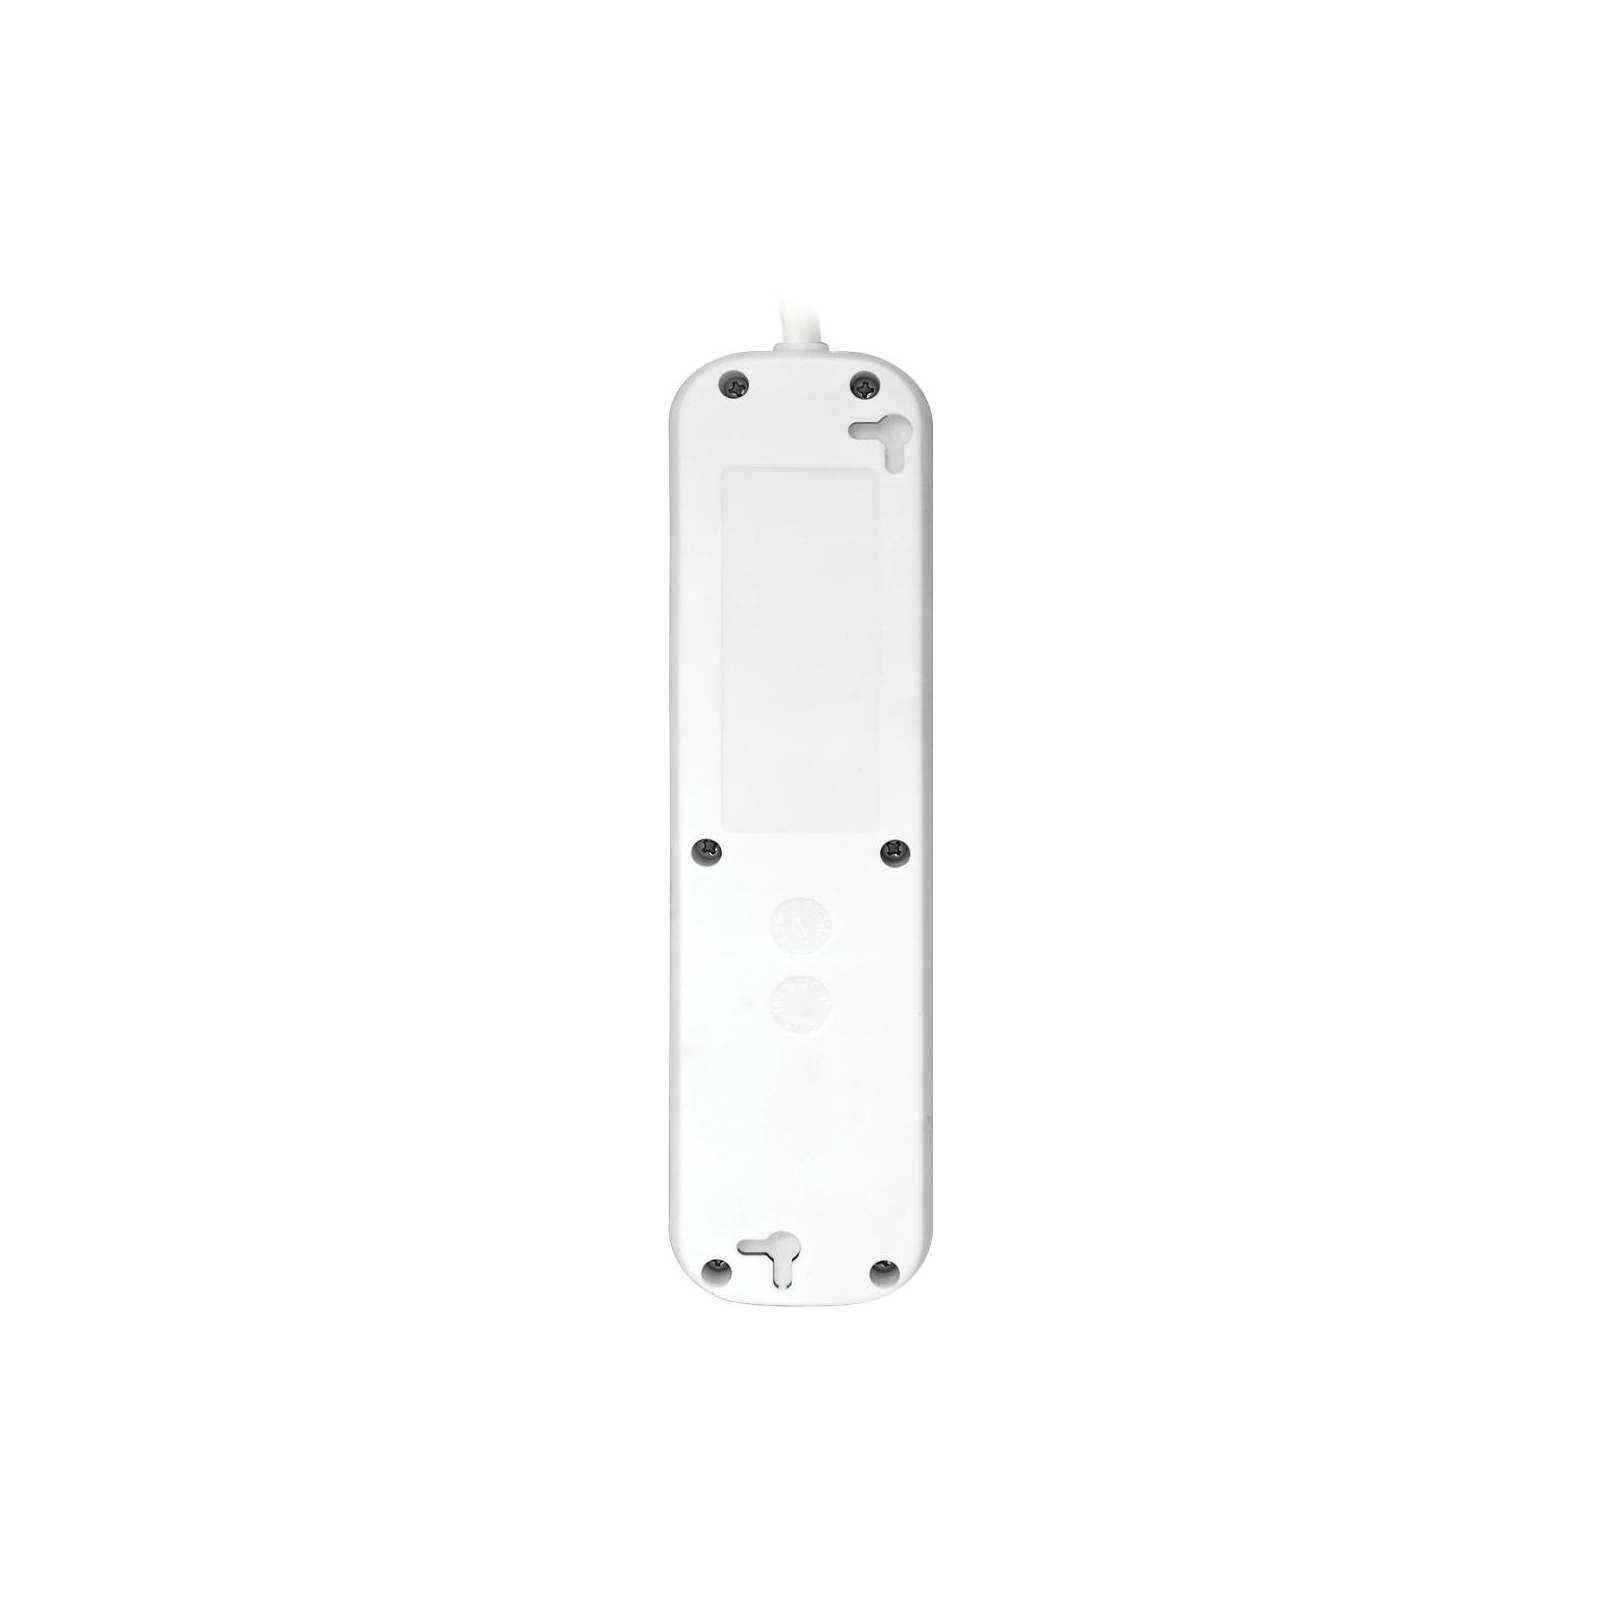 Сетевой удлинитель Defender S430 3.0 m 4 роз switch white (99238) изображение 3